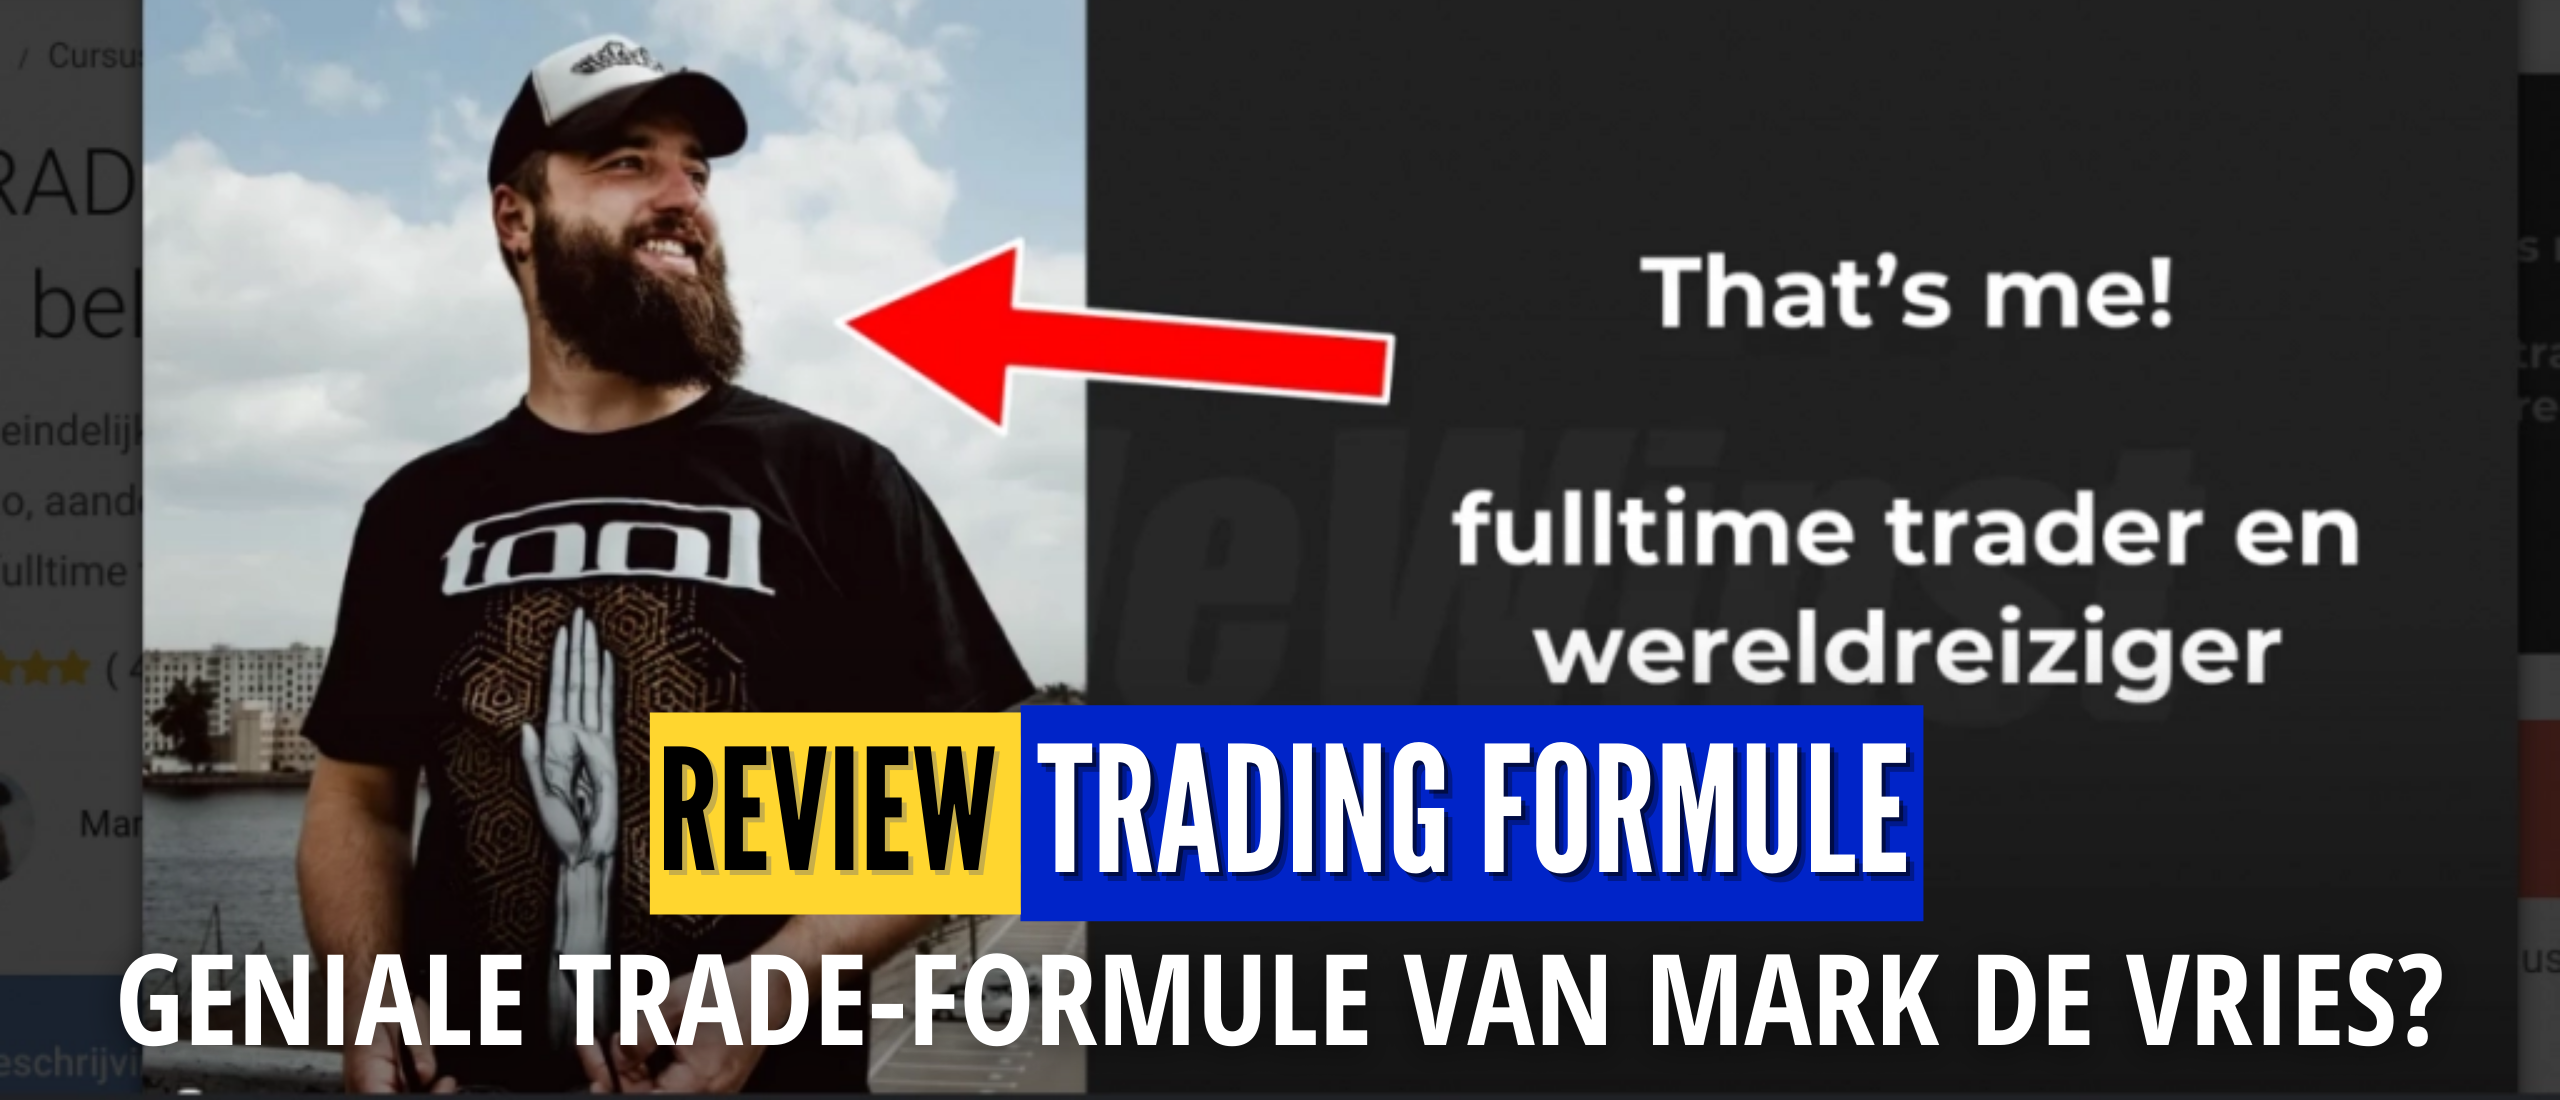 Trading Formule Review (Mark de Vries) Ervaringen en Trade Tips